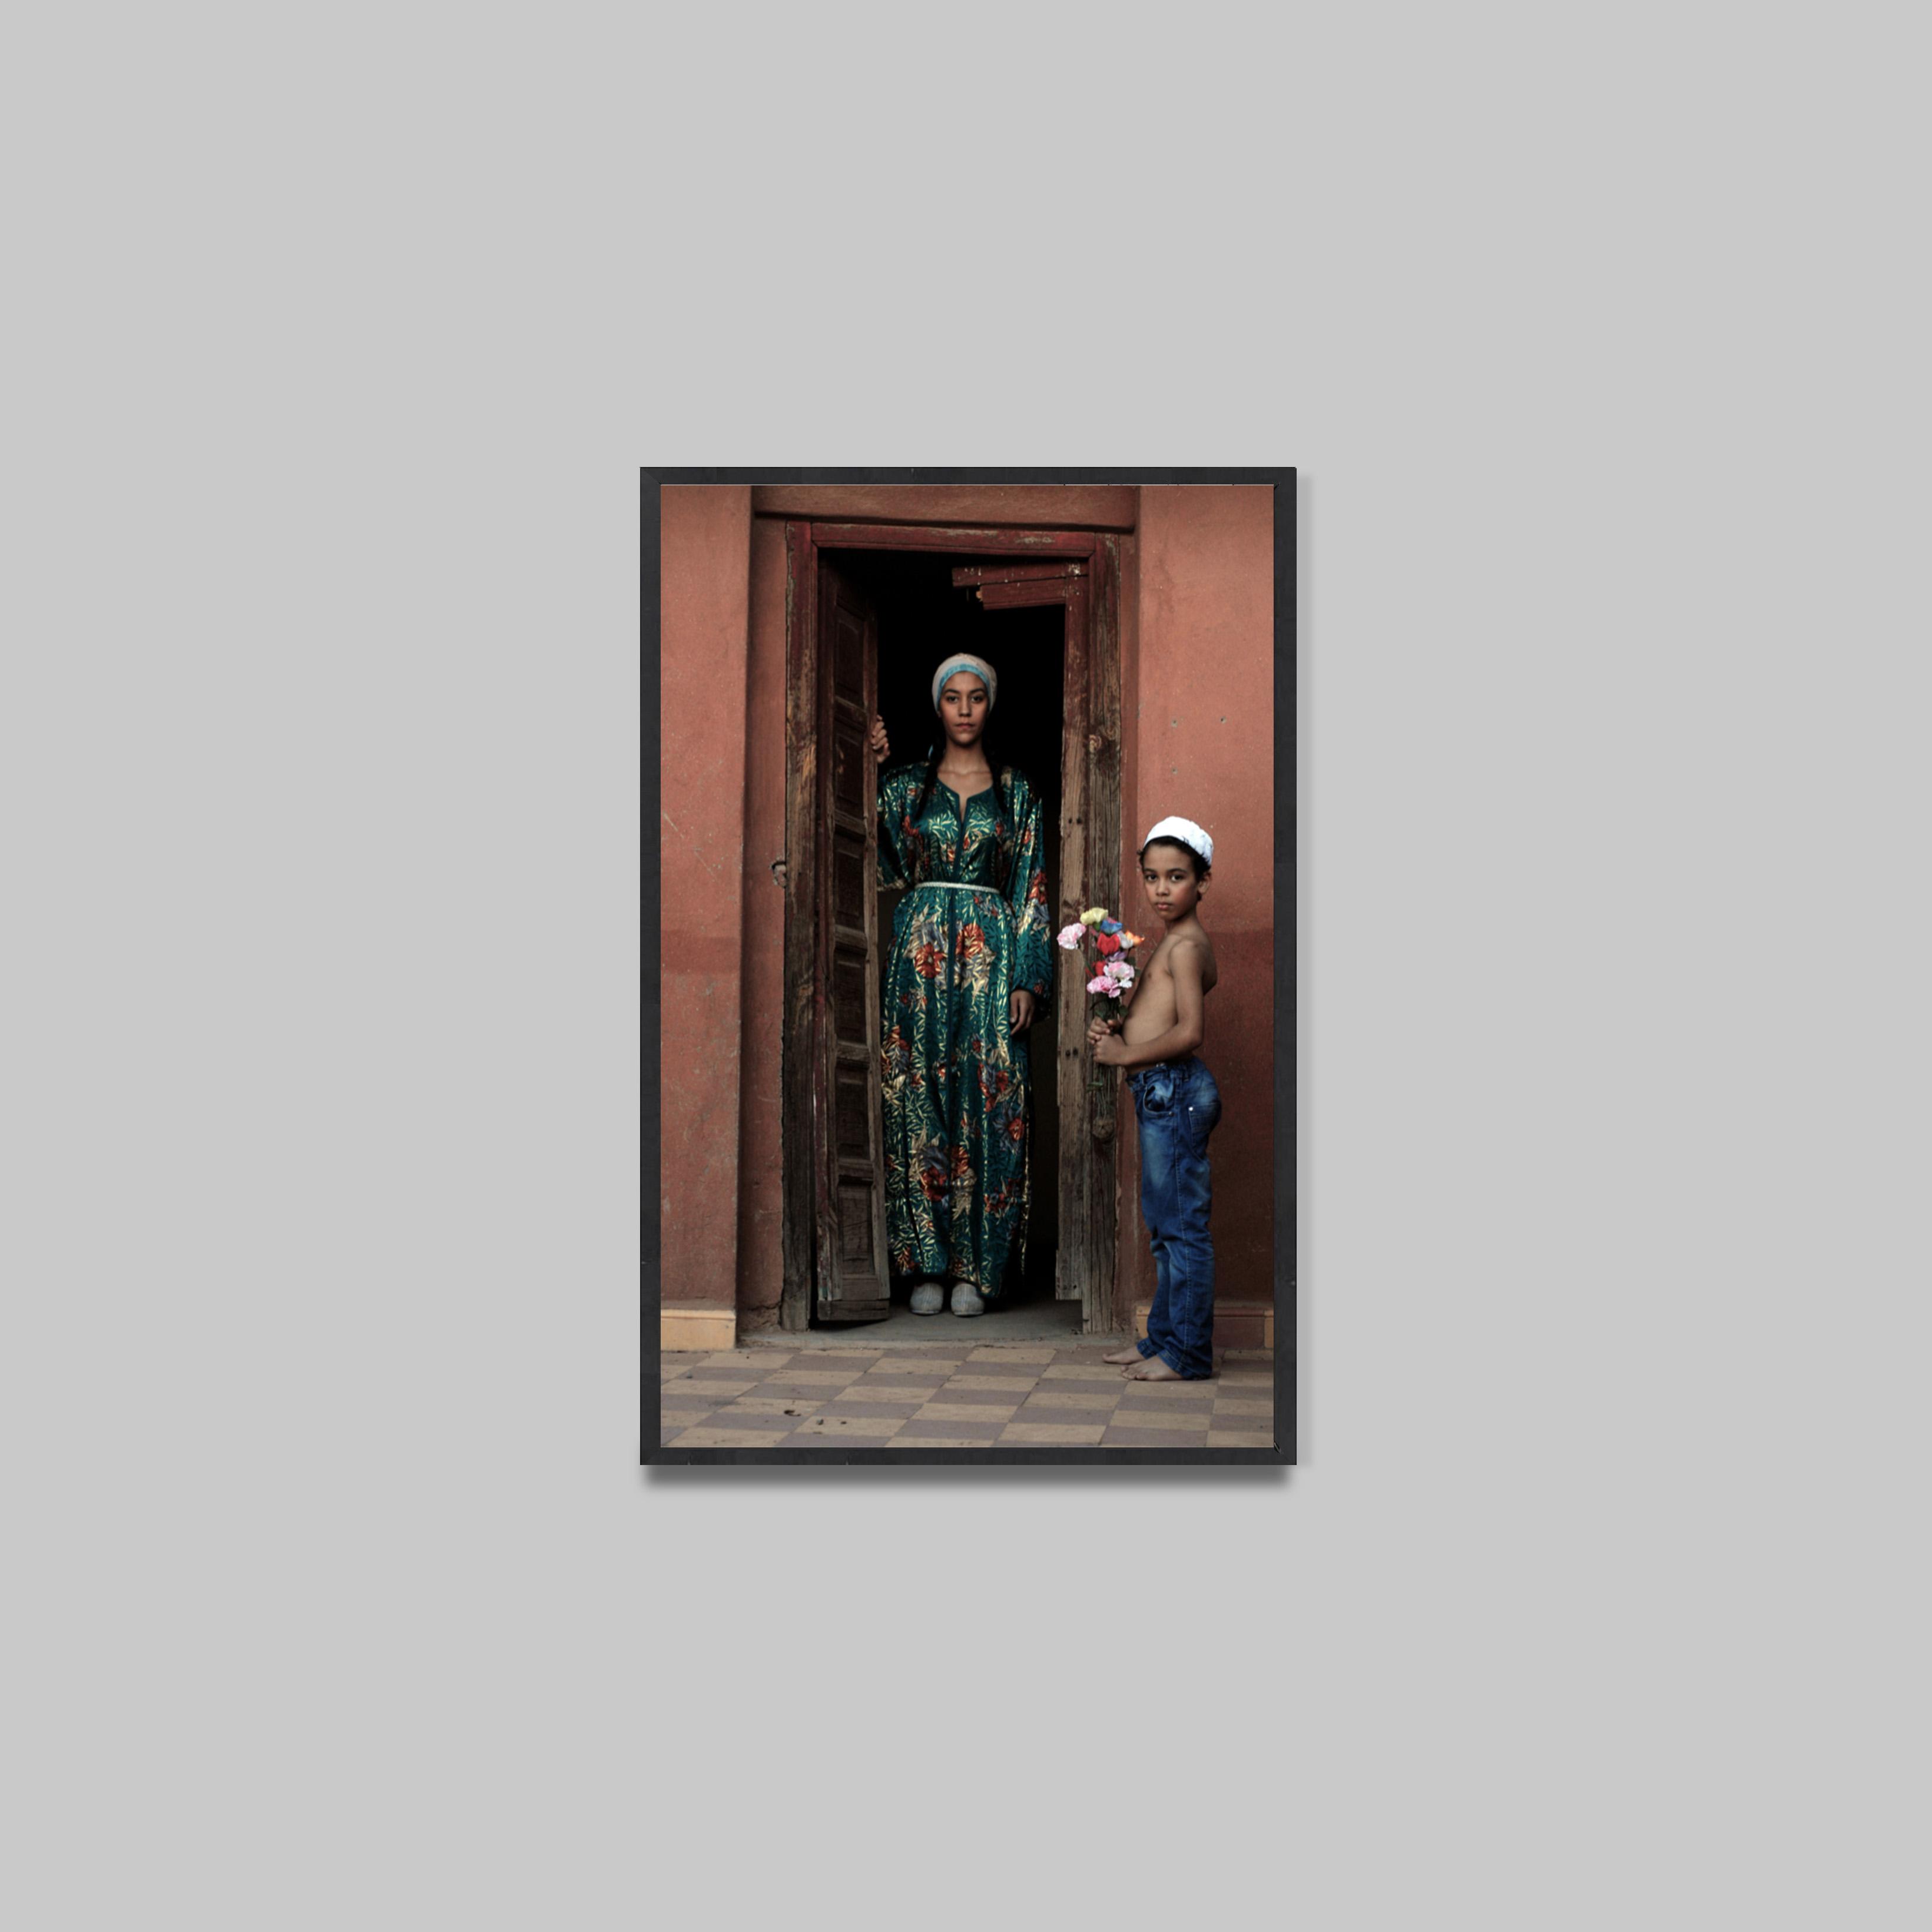 Zahrin Kahlo
Oriontalist Portrait, 2015
Photographie
100 x 170 cm